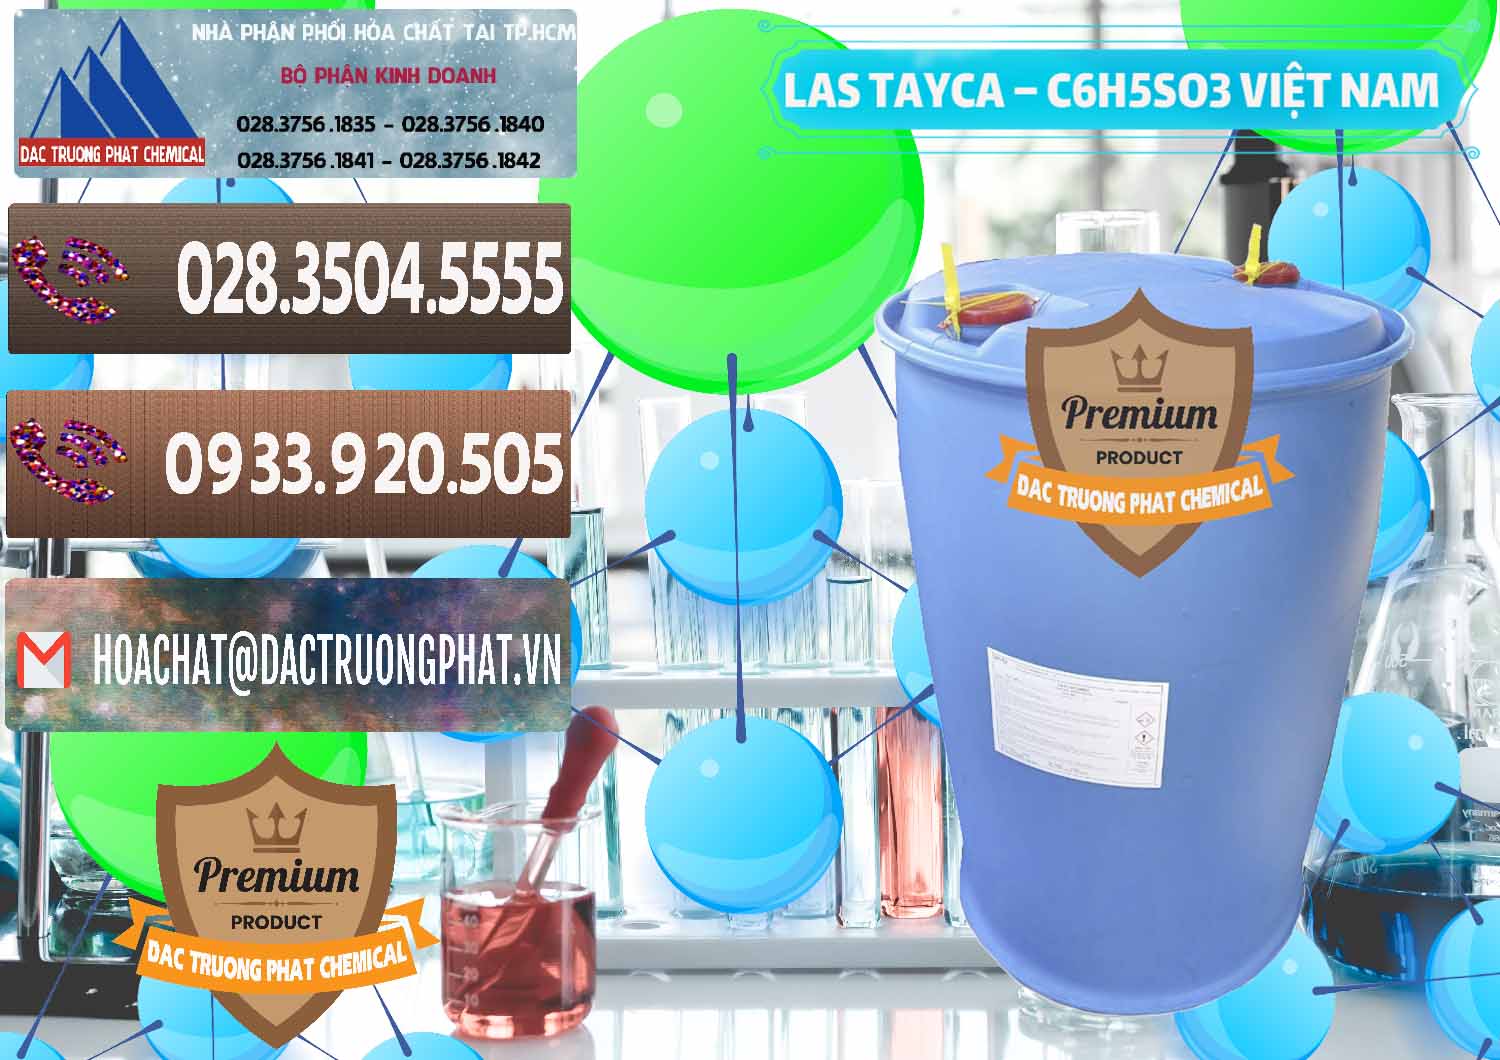 Nơi bán - cung ứng Chất tạo bọt Las Tayca Việt Nam - 0305 - Cty bán ( cung cấp ) hóa chất tại TP.HCM - hoachatviet.net